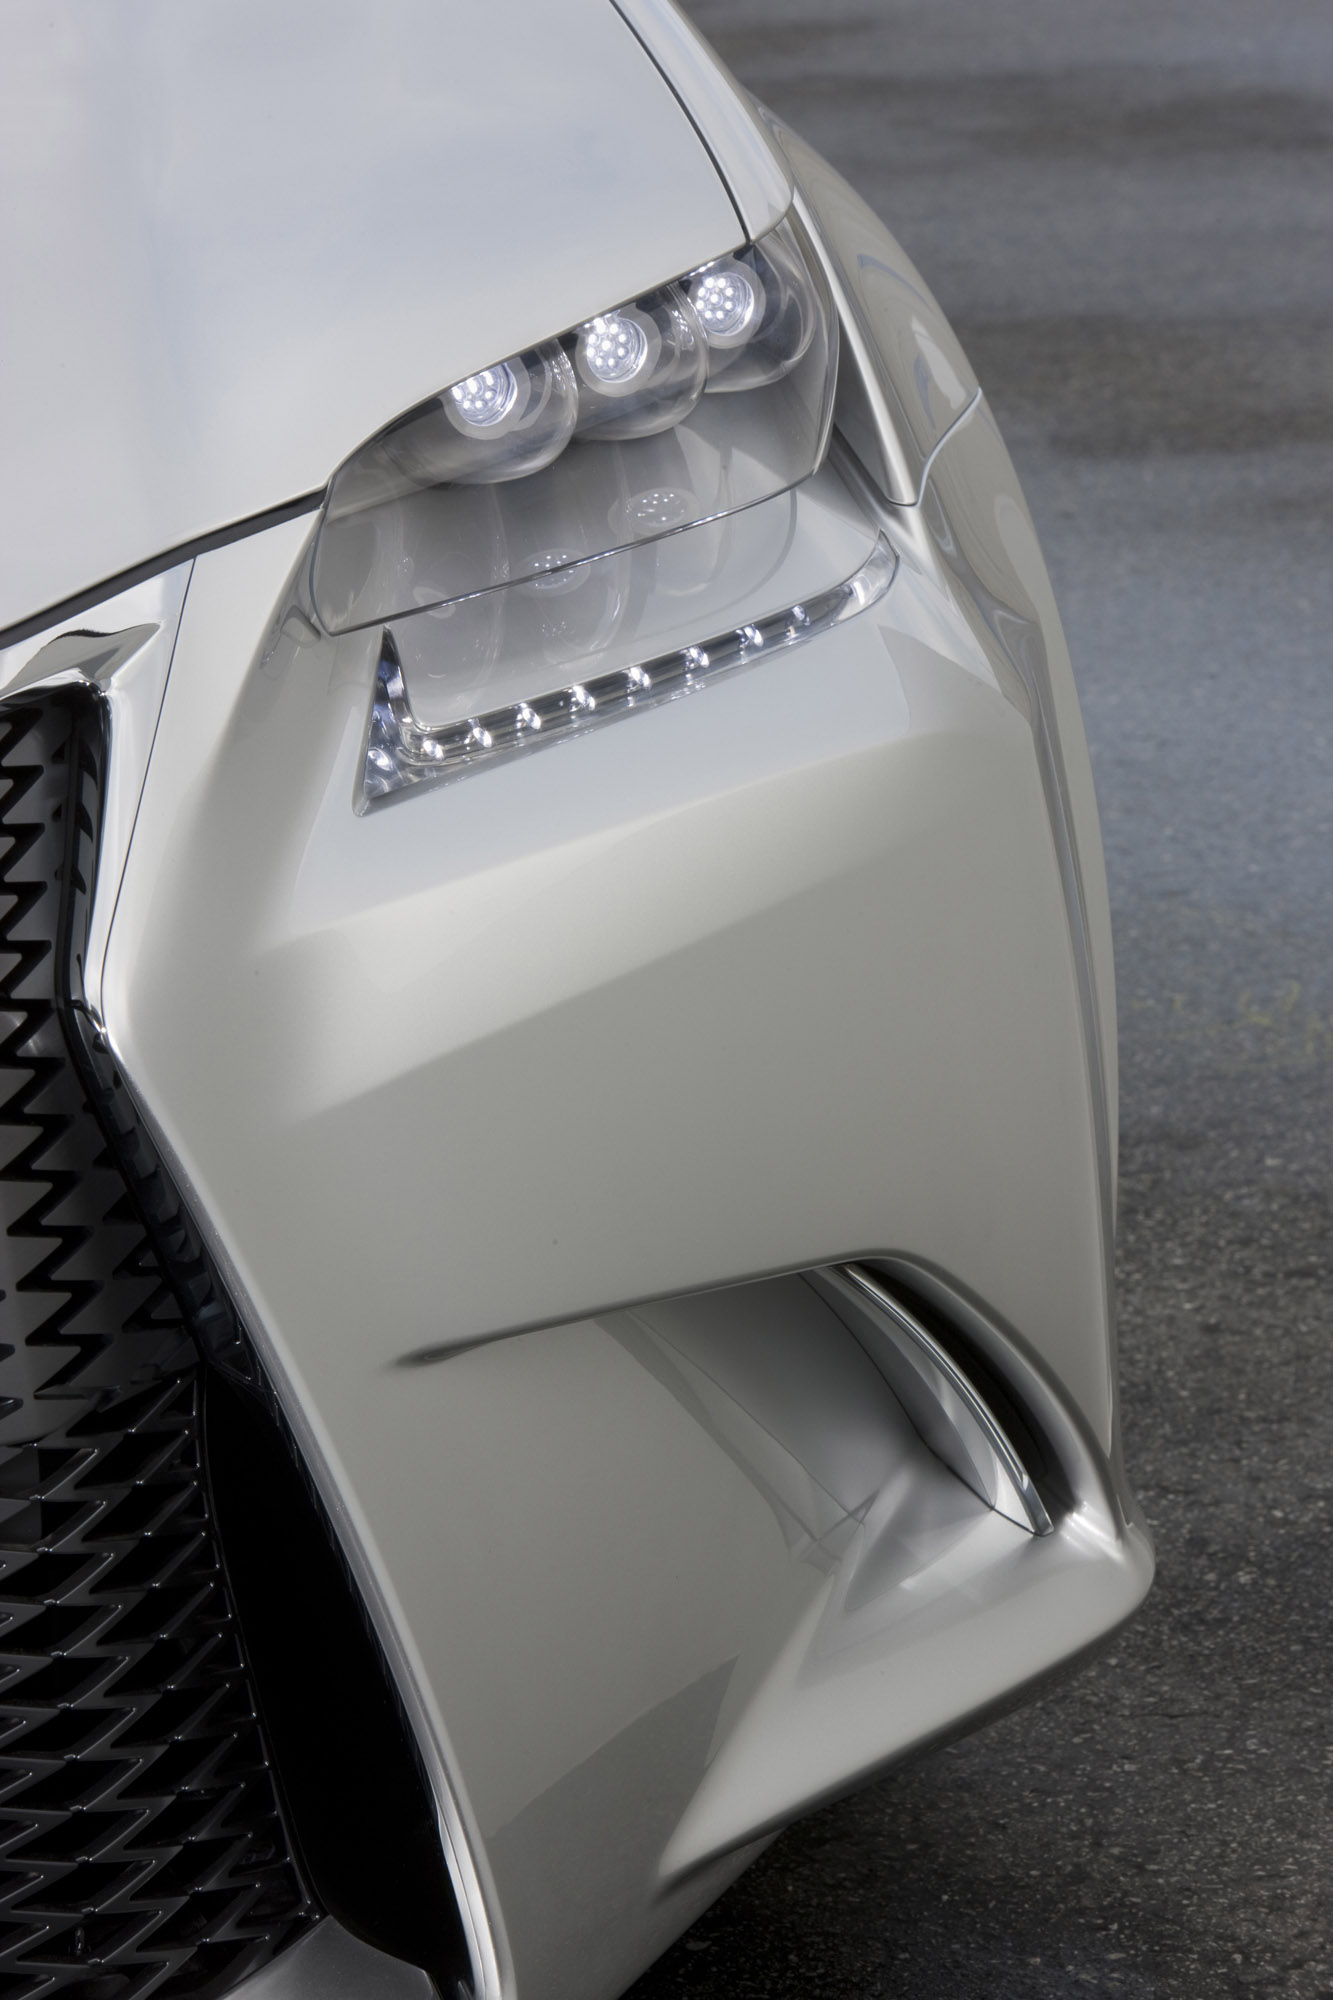 Lexus LF-Gh Hybrid Concept (teaser)